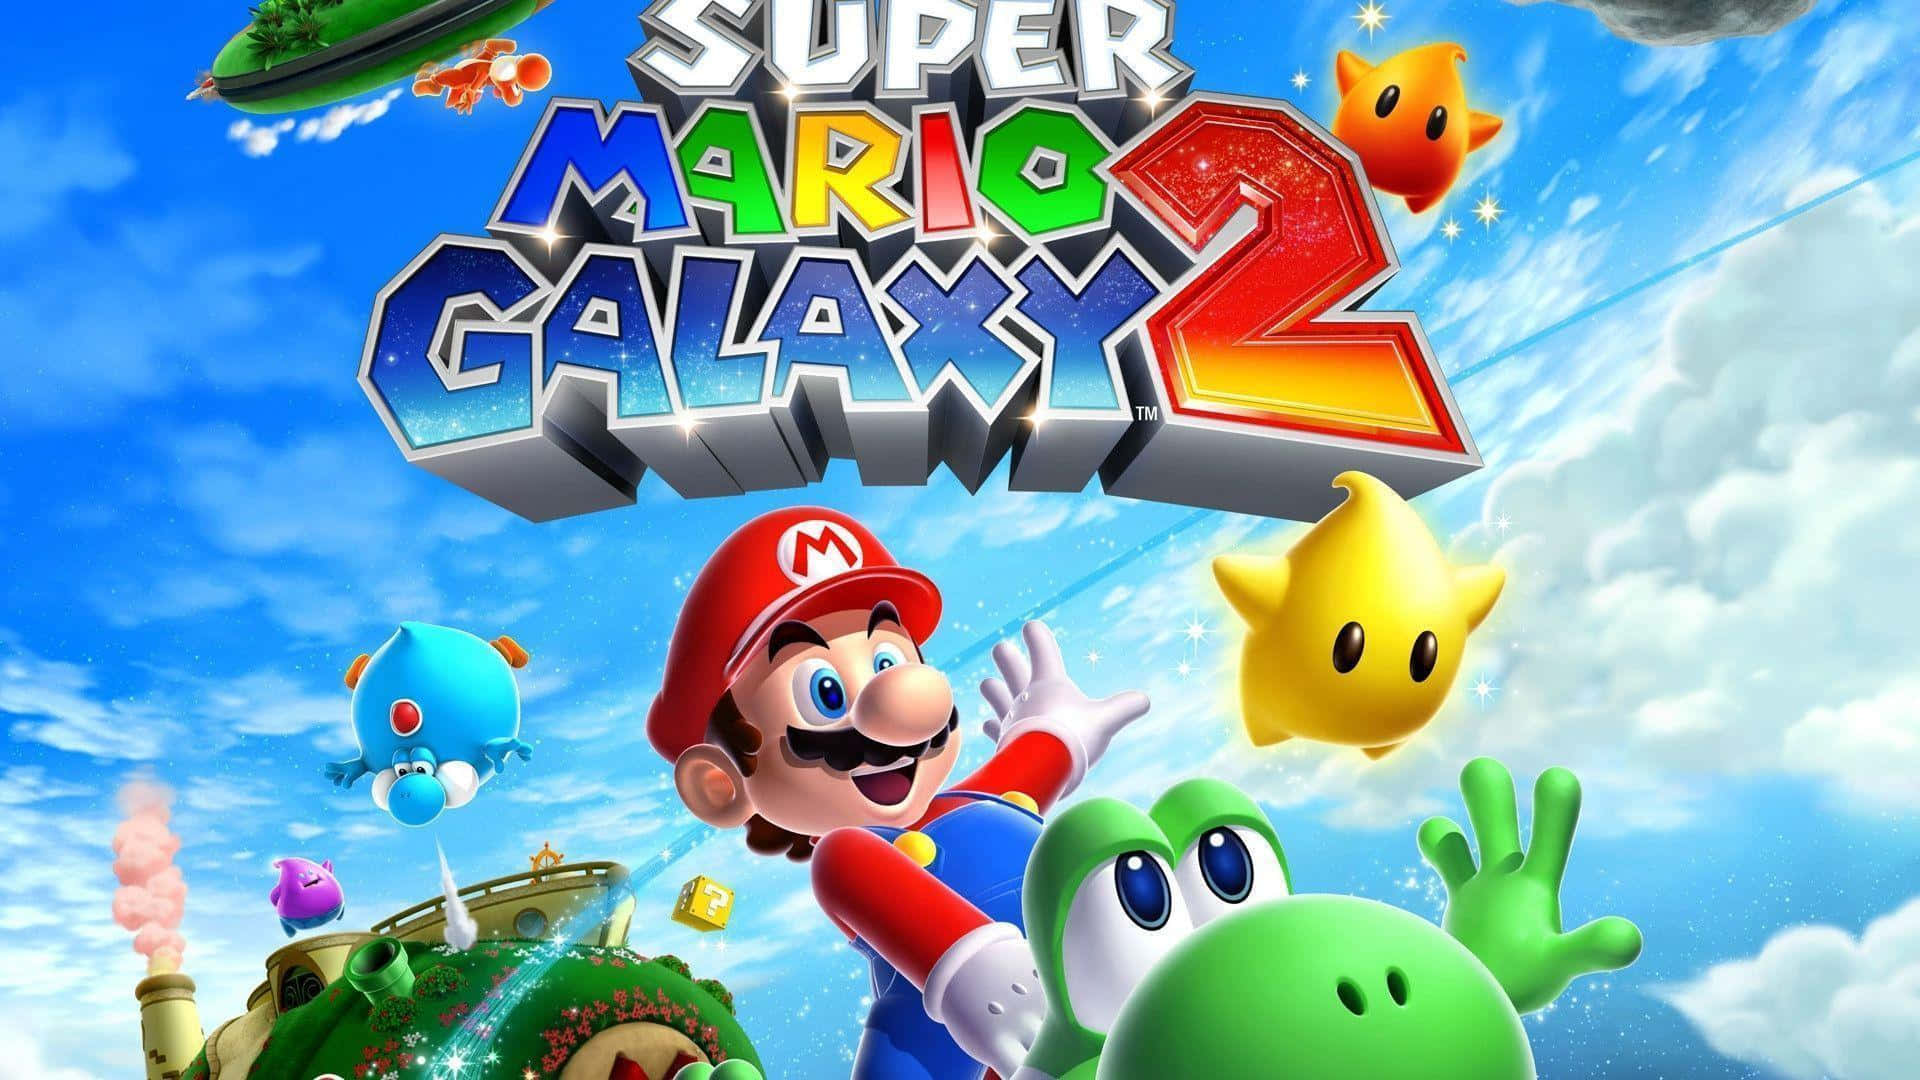 Utforskavintergatan I Jakten På Stjärnor I Super Mario Galaxy Wallpaper